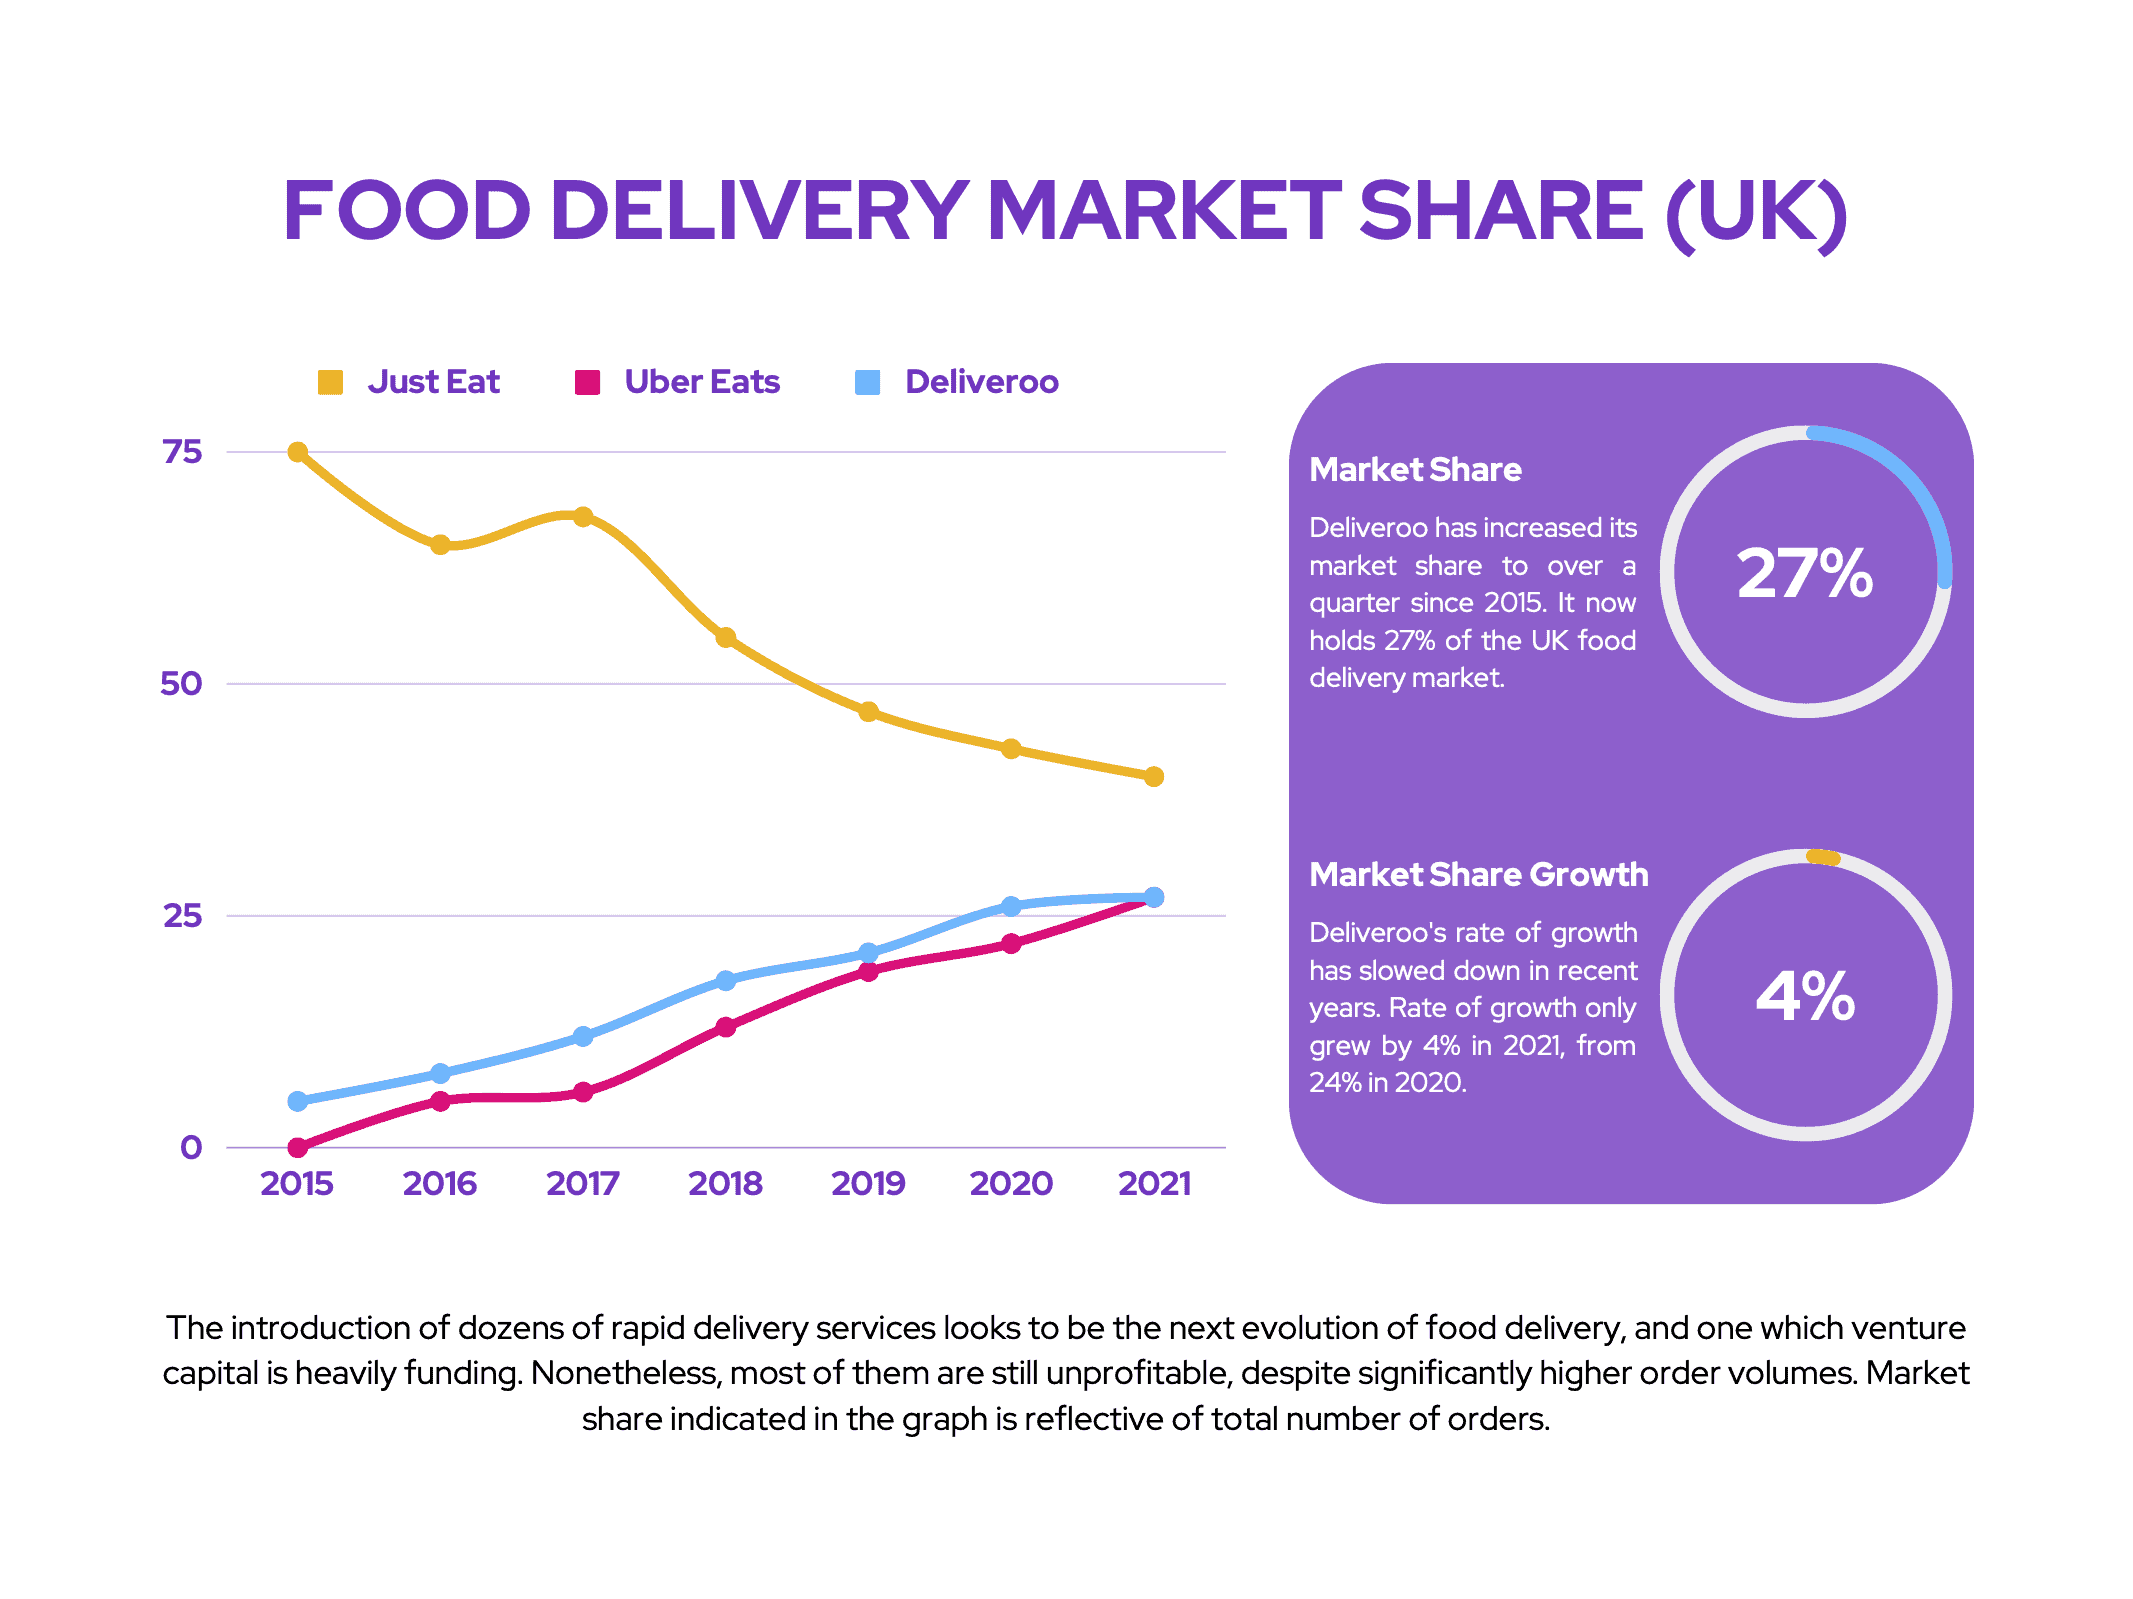 Deliveroo: Food Delivery Market Share (UK)